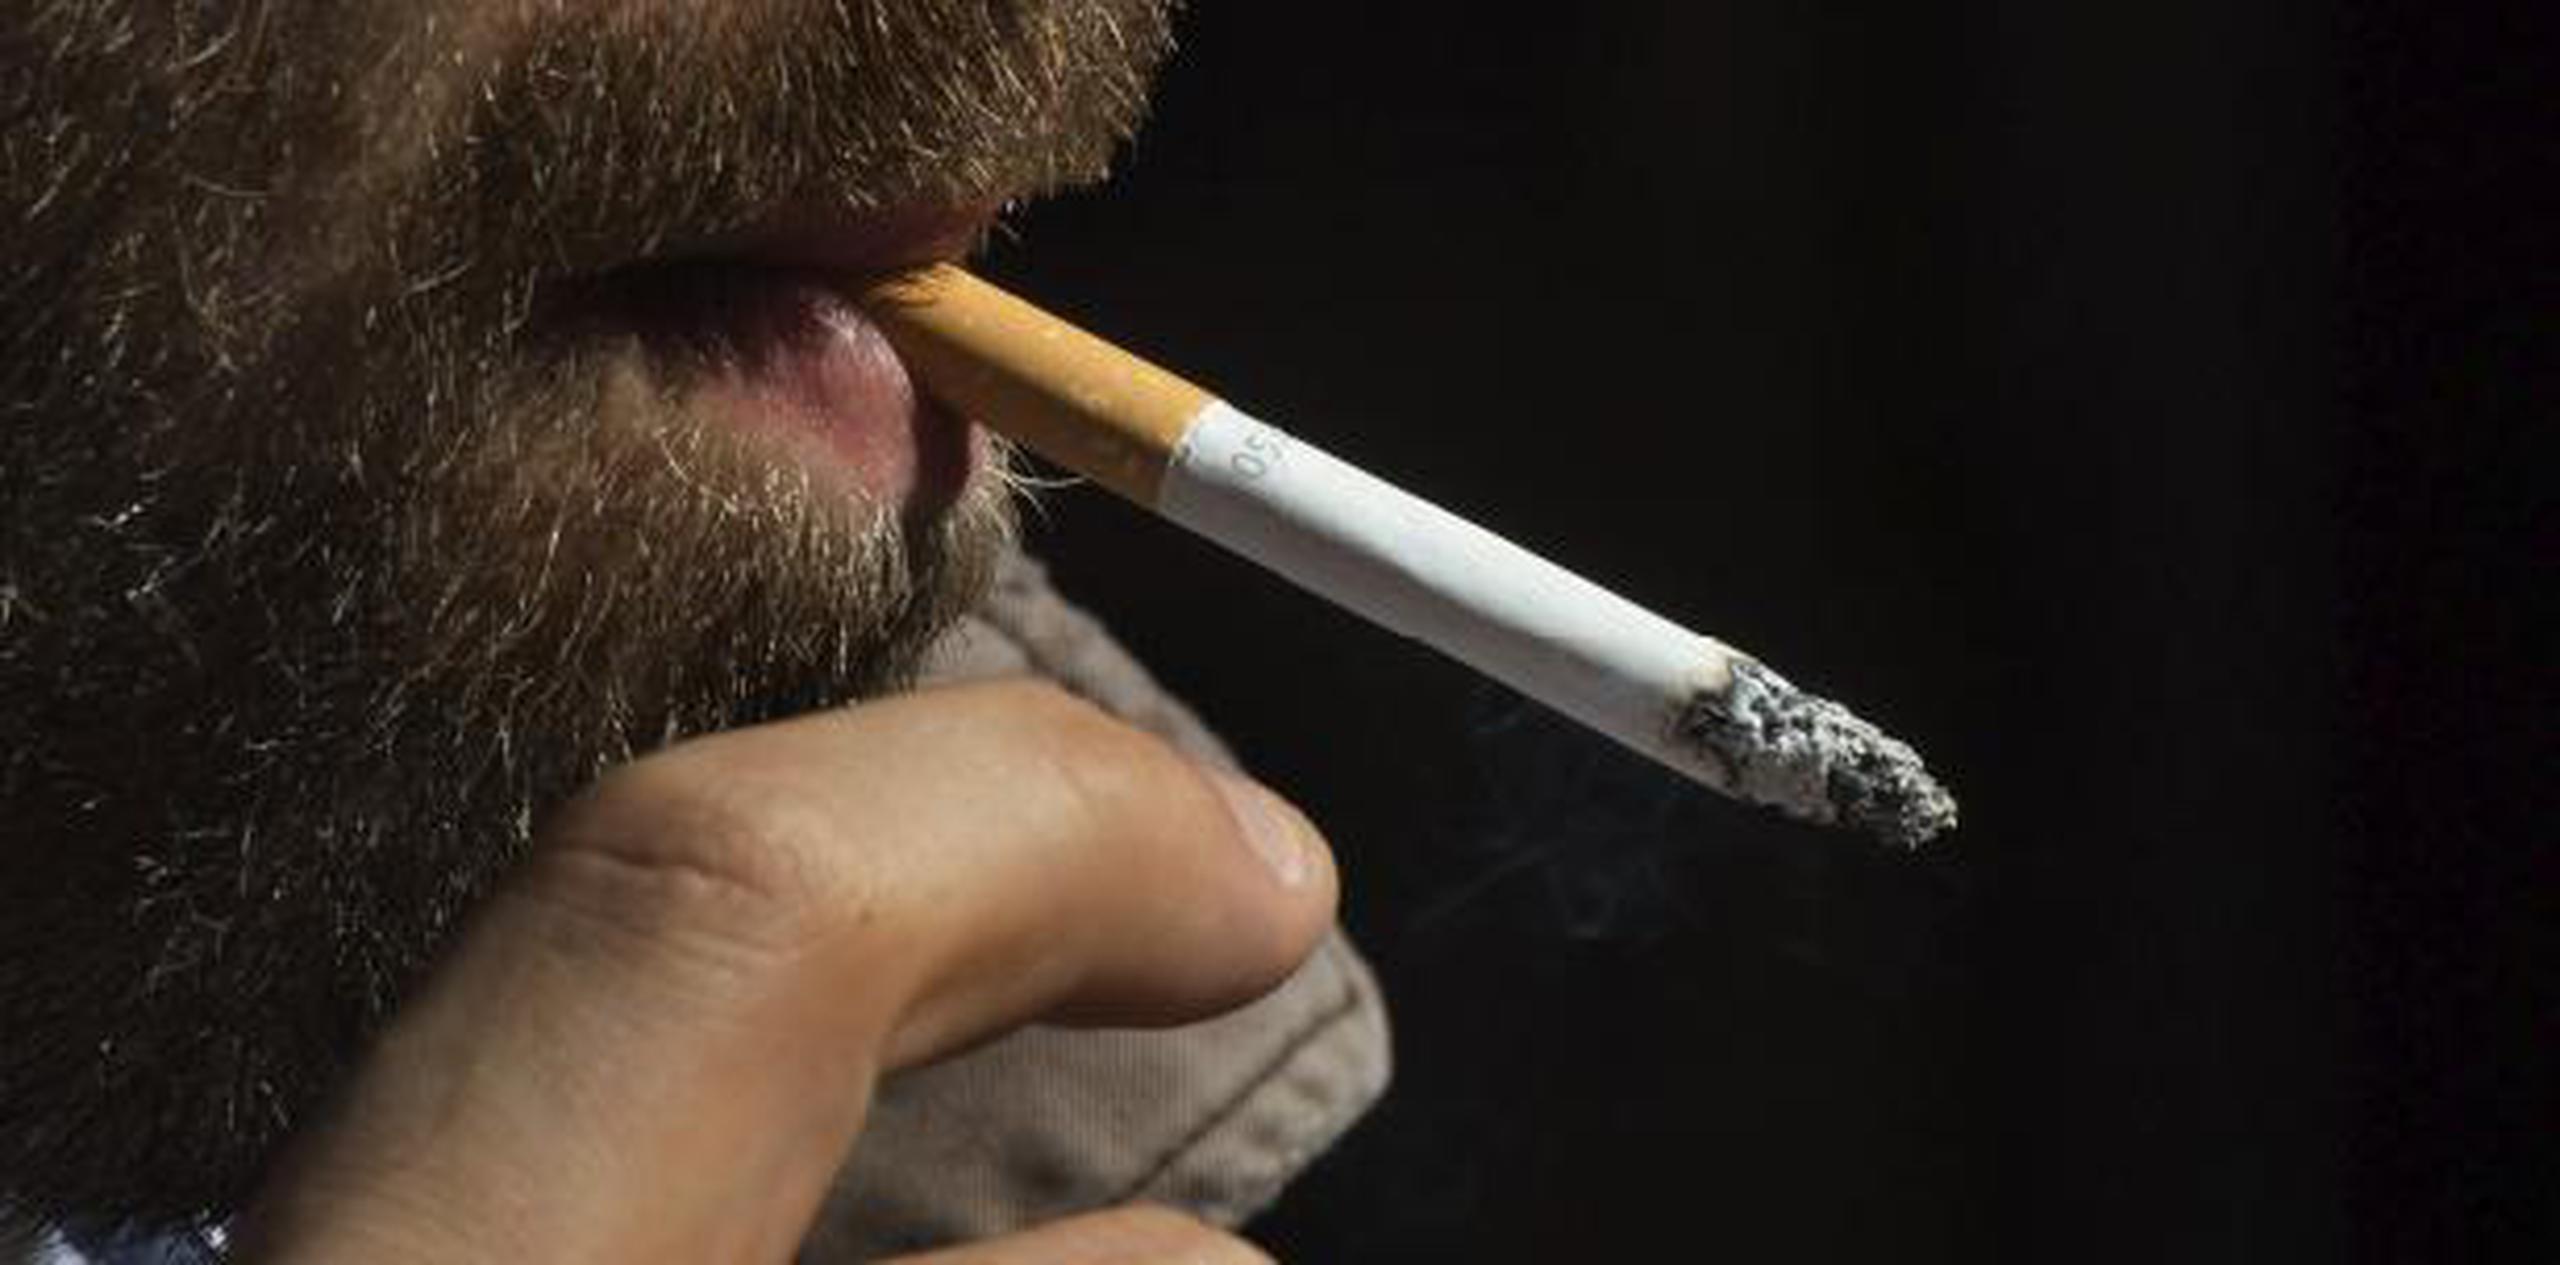 Dieciséis estados han aprobado subir la edad mínima para fumar a 21 años, aunque en algunos los cambios no entrarán en vigor sino este año dentro de unos meses o en los próximos años. (Archivo)